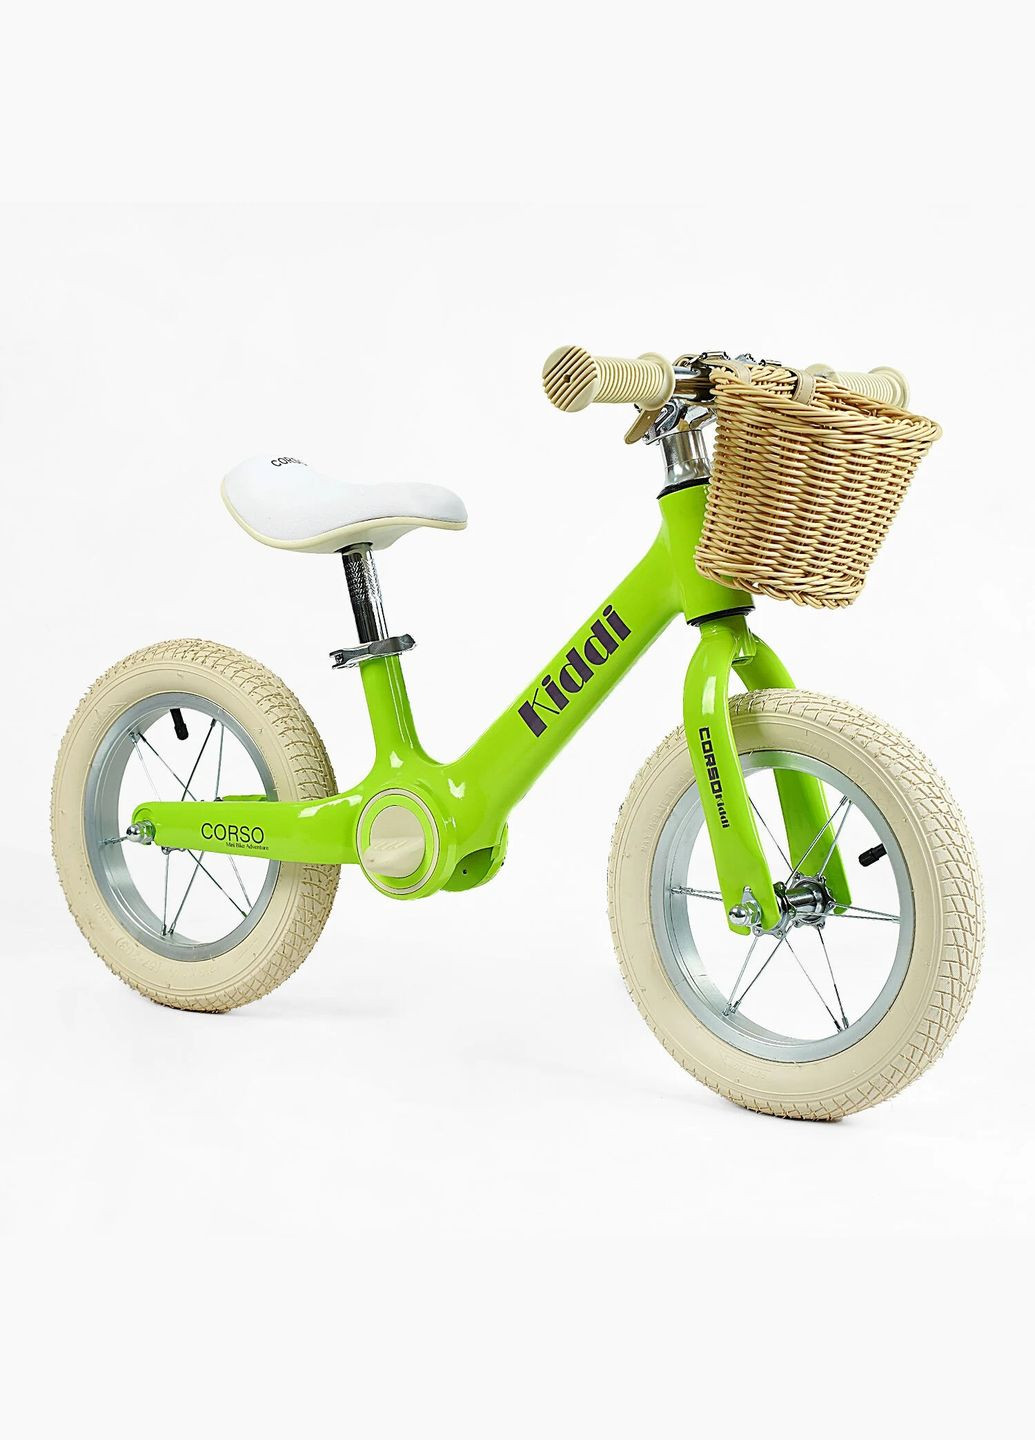 Дитячий велобіг KIDDI ML-12328. Магнієва рама, надувні колеса 12", підставка для ніг, кошик Corso (290254805)